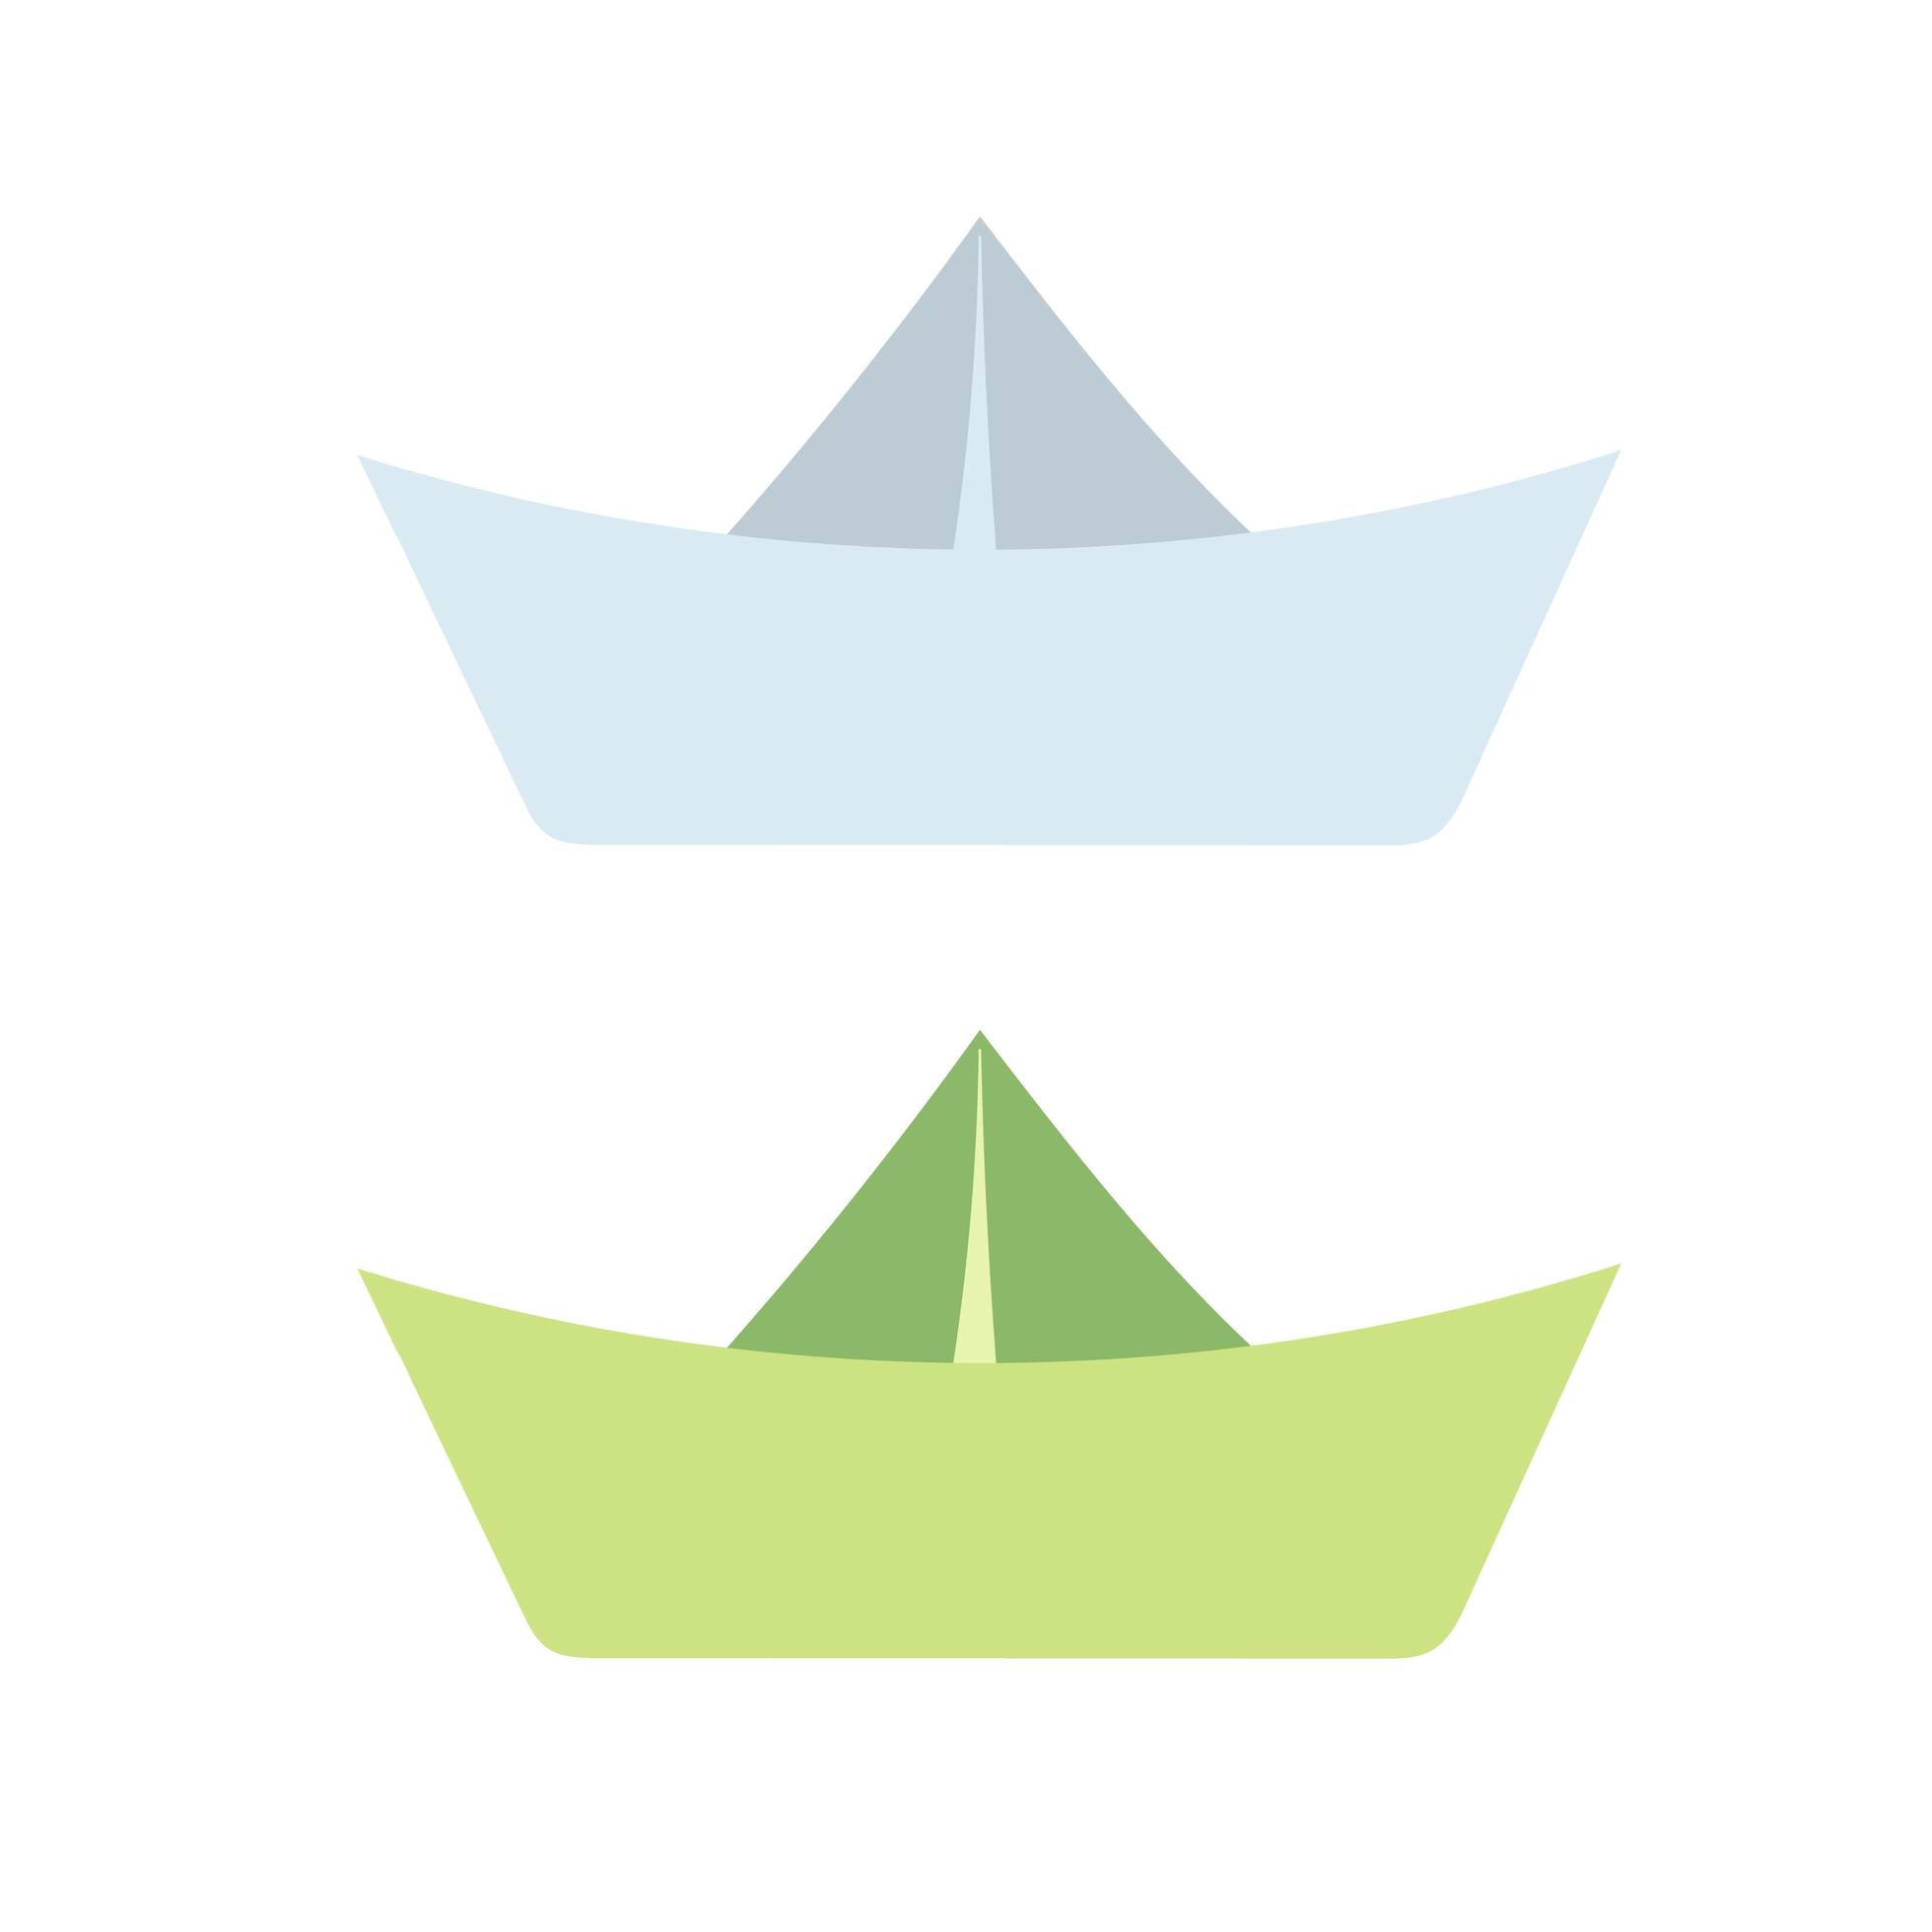 icônes de bateau en papier dessinés à la main. dessin simple d'un bateau en origami vecteur